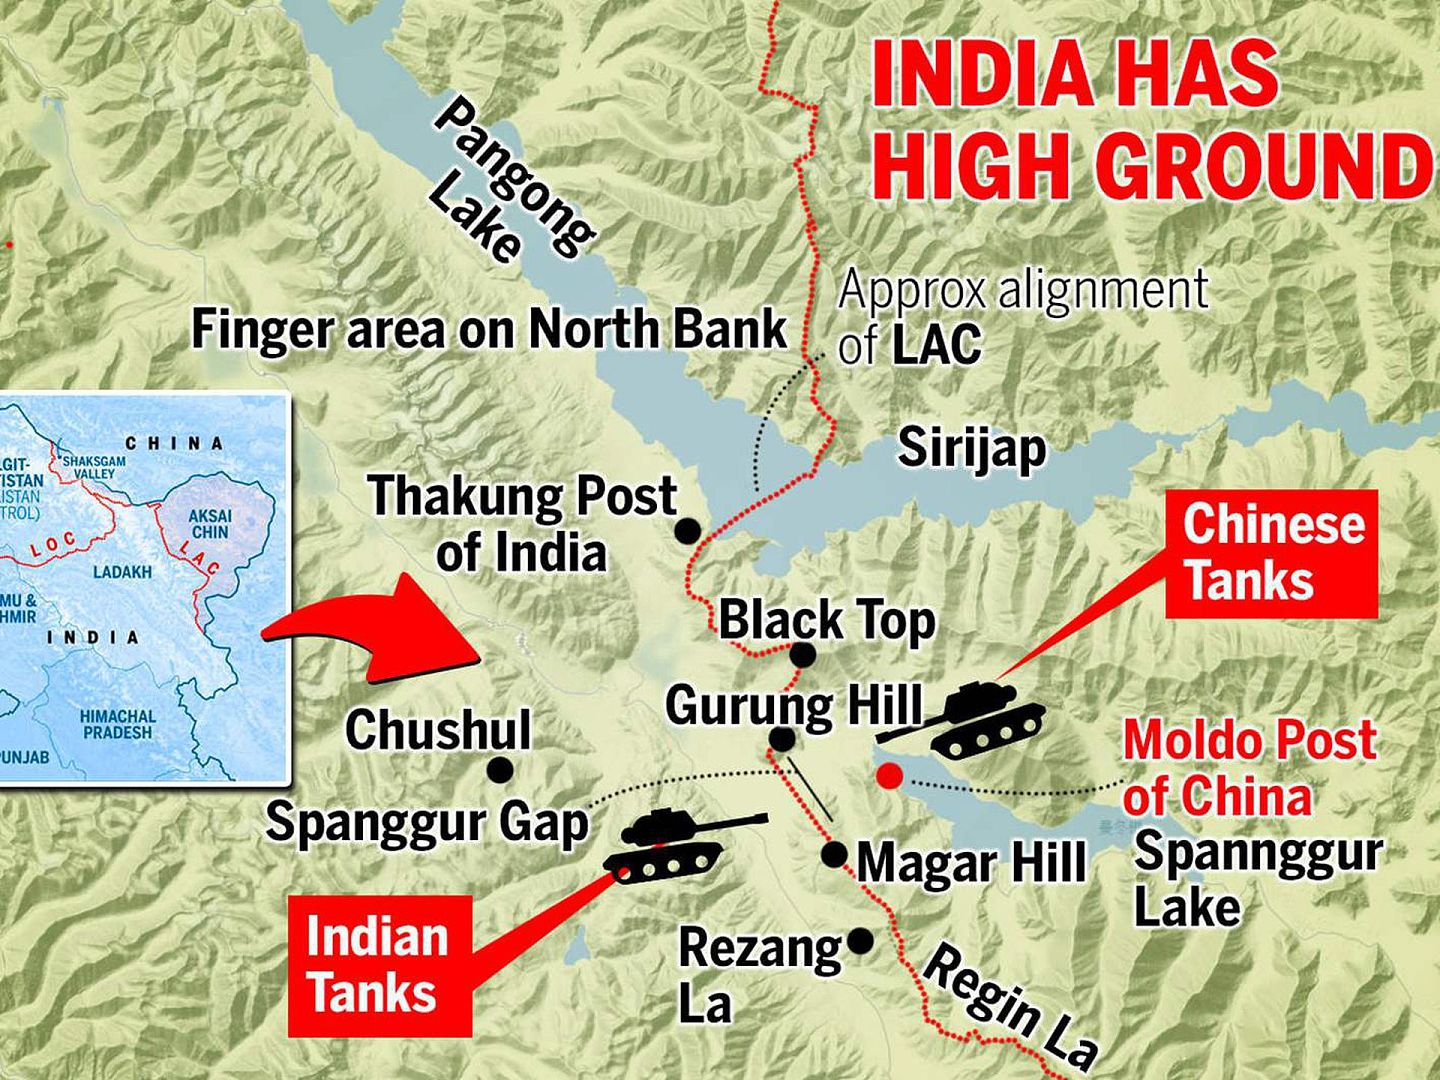 中印军队在班公湖对峙。印度军队8月29日晚采取行动，占领了班公湖南岸关键高地。两军已出动坦克对峙，局势一触即发。（The Times of India）